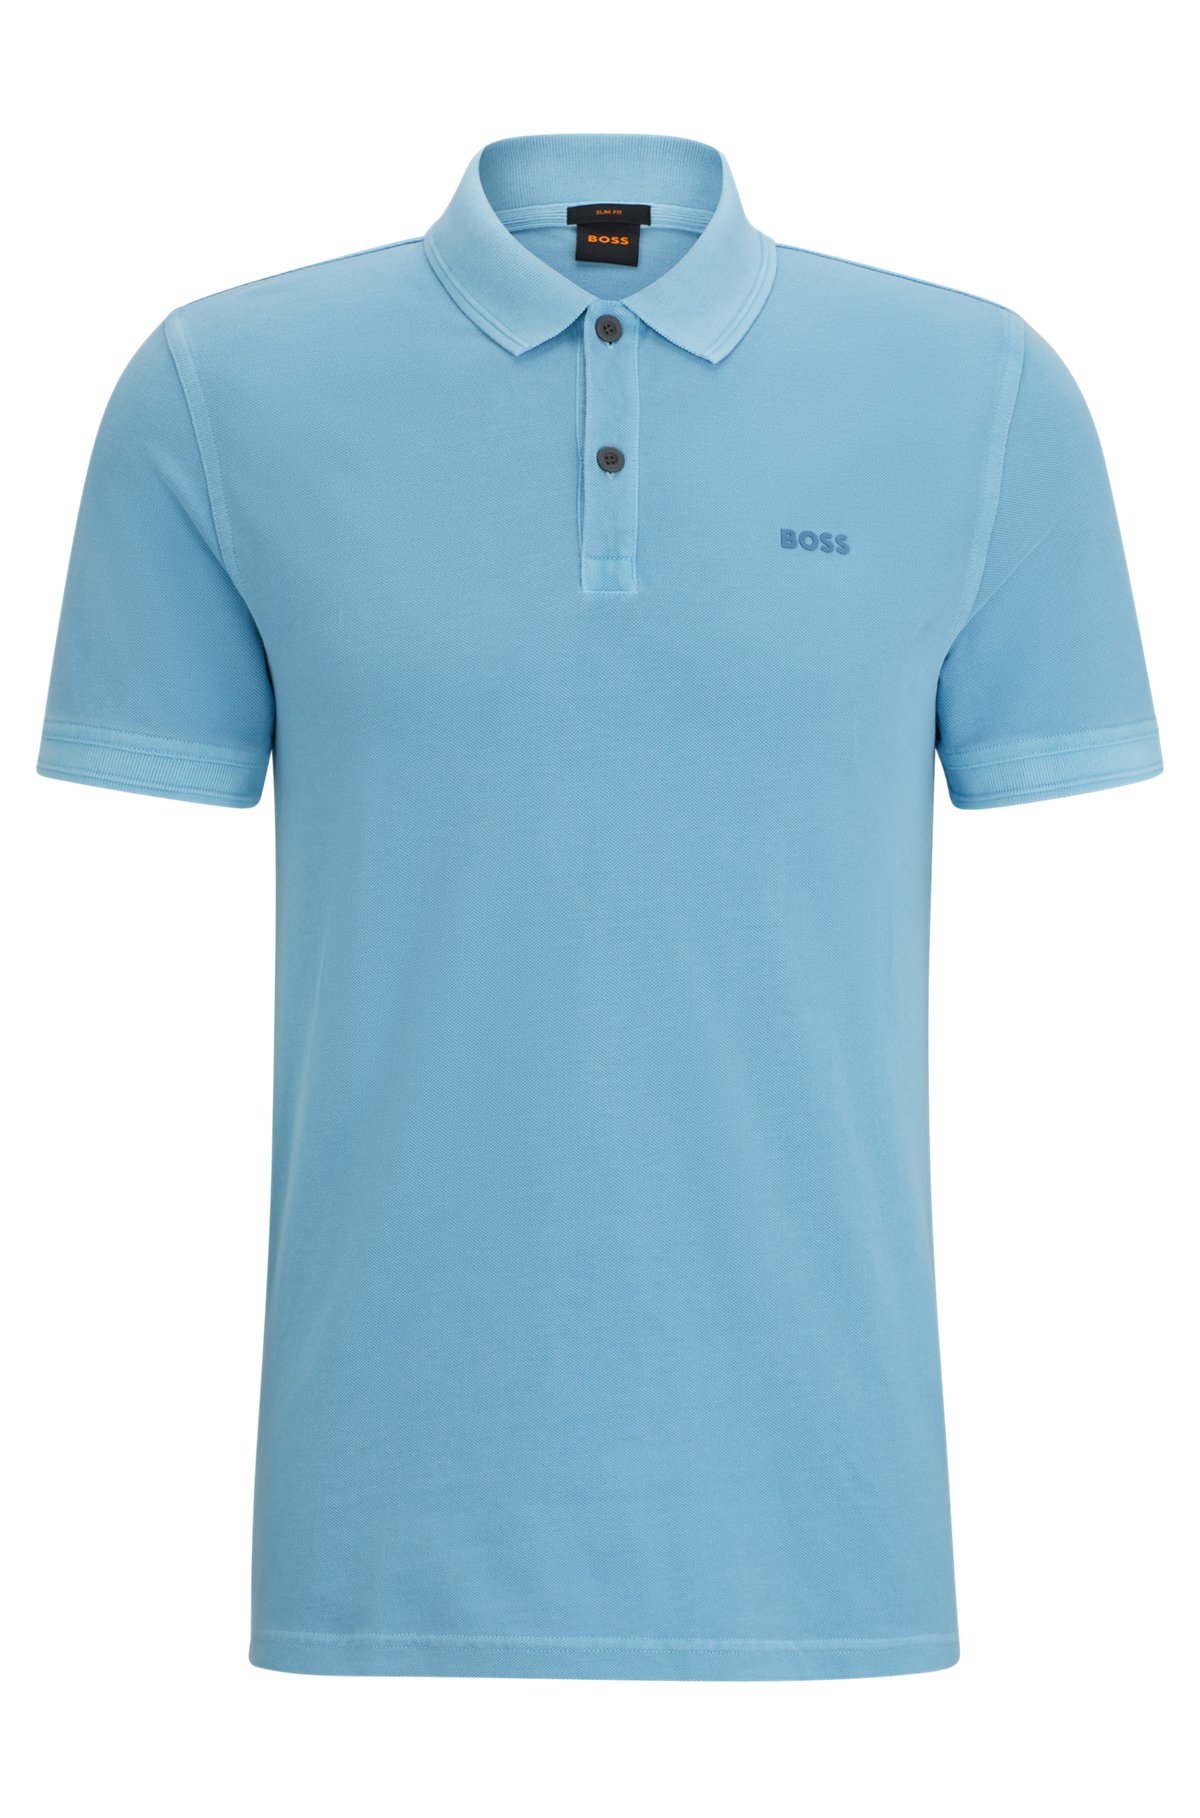 Slim-fit polo shirt in cotton piqué, Light Blue